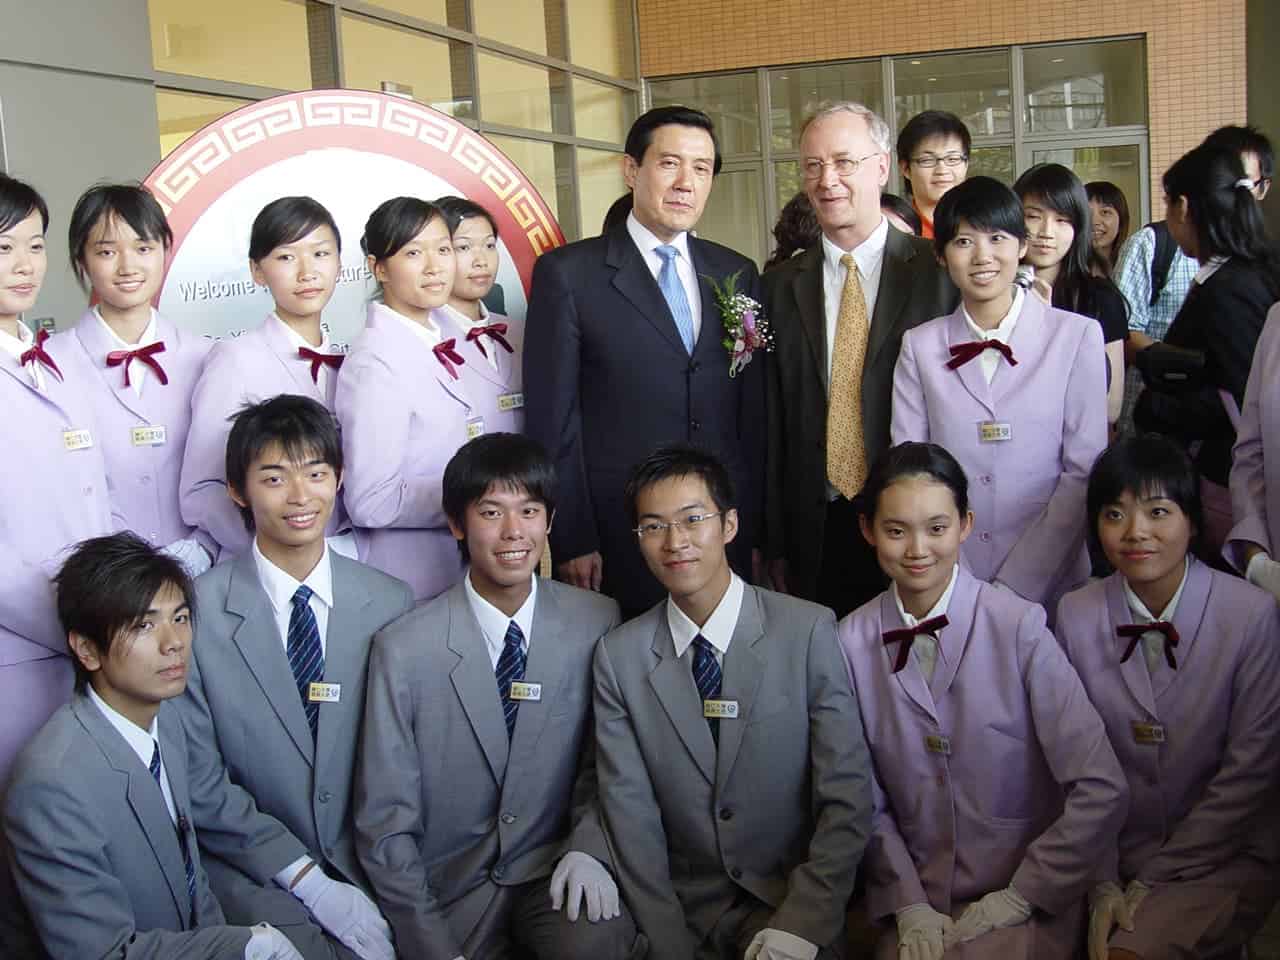 2007.07.30時任台北市長馬英九先生蒞校演講